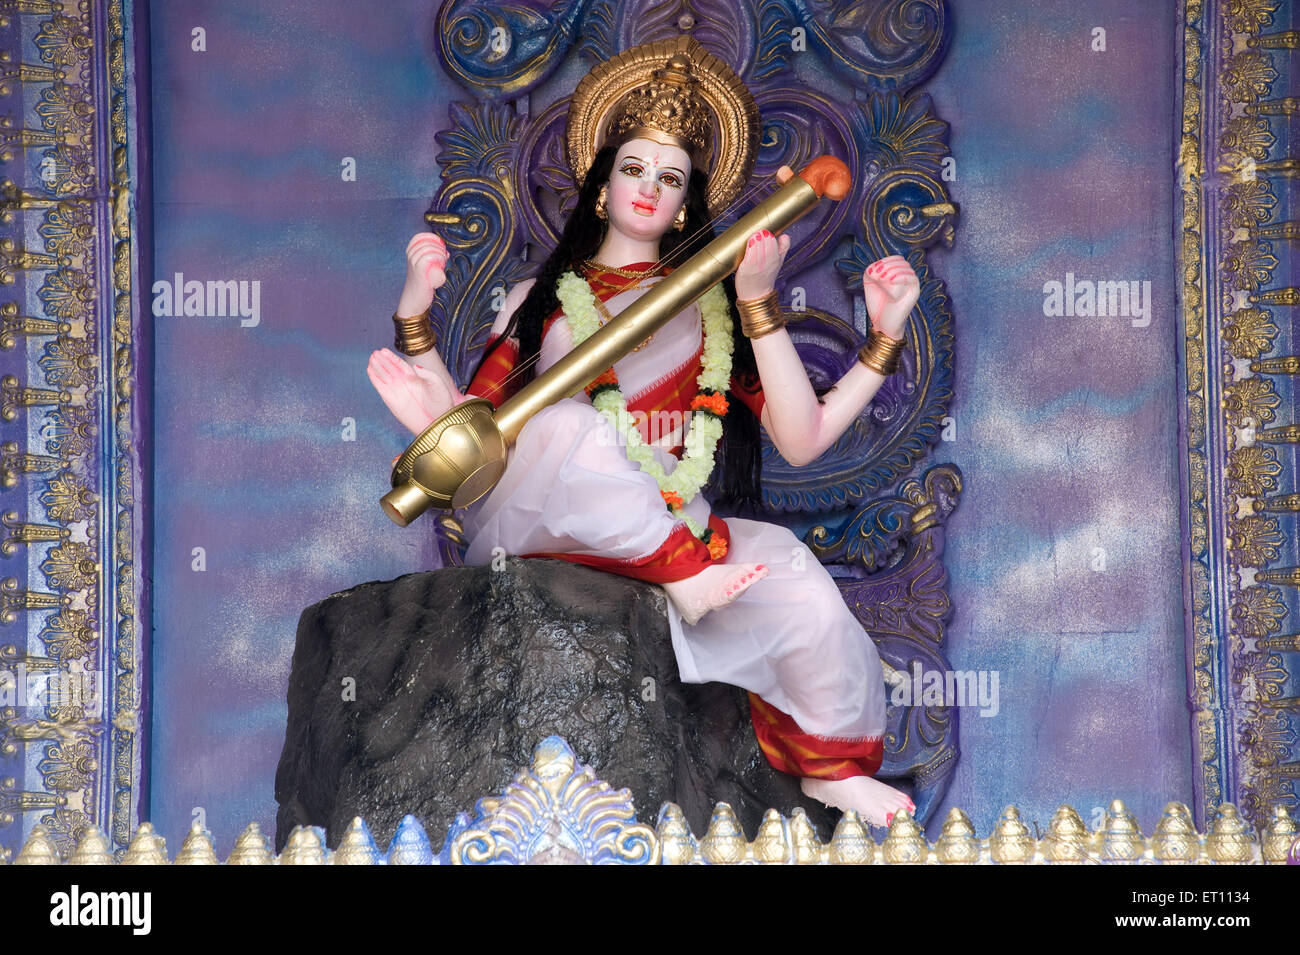 Idole de Saraswati jouant d'un instrument à Pune Maharashtra Inde Asie 2011 Banque D'Images